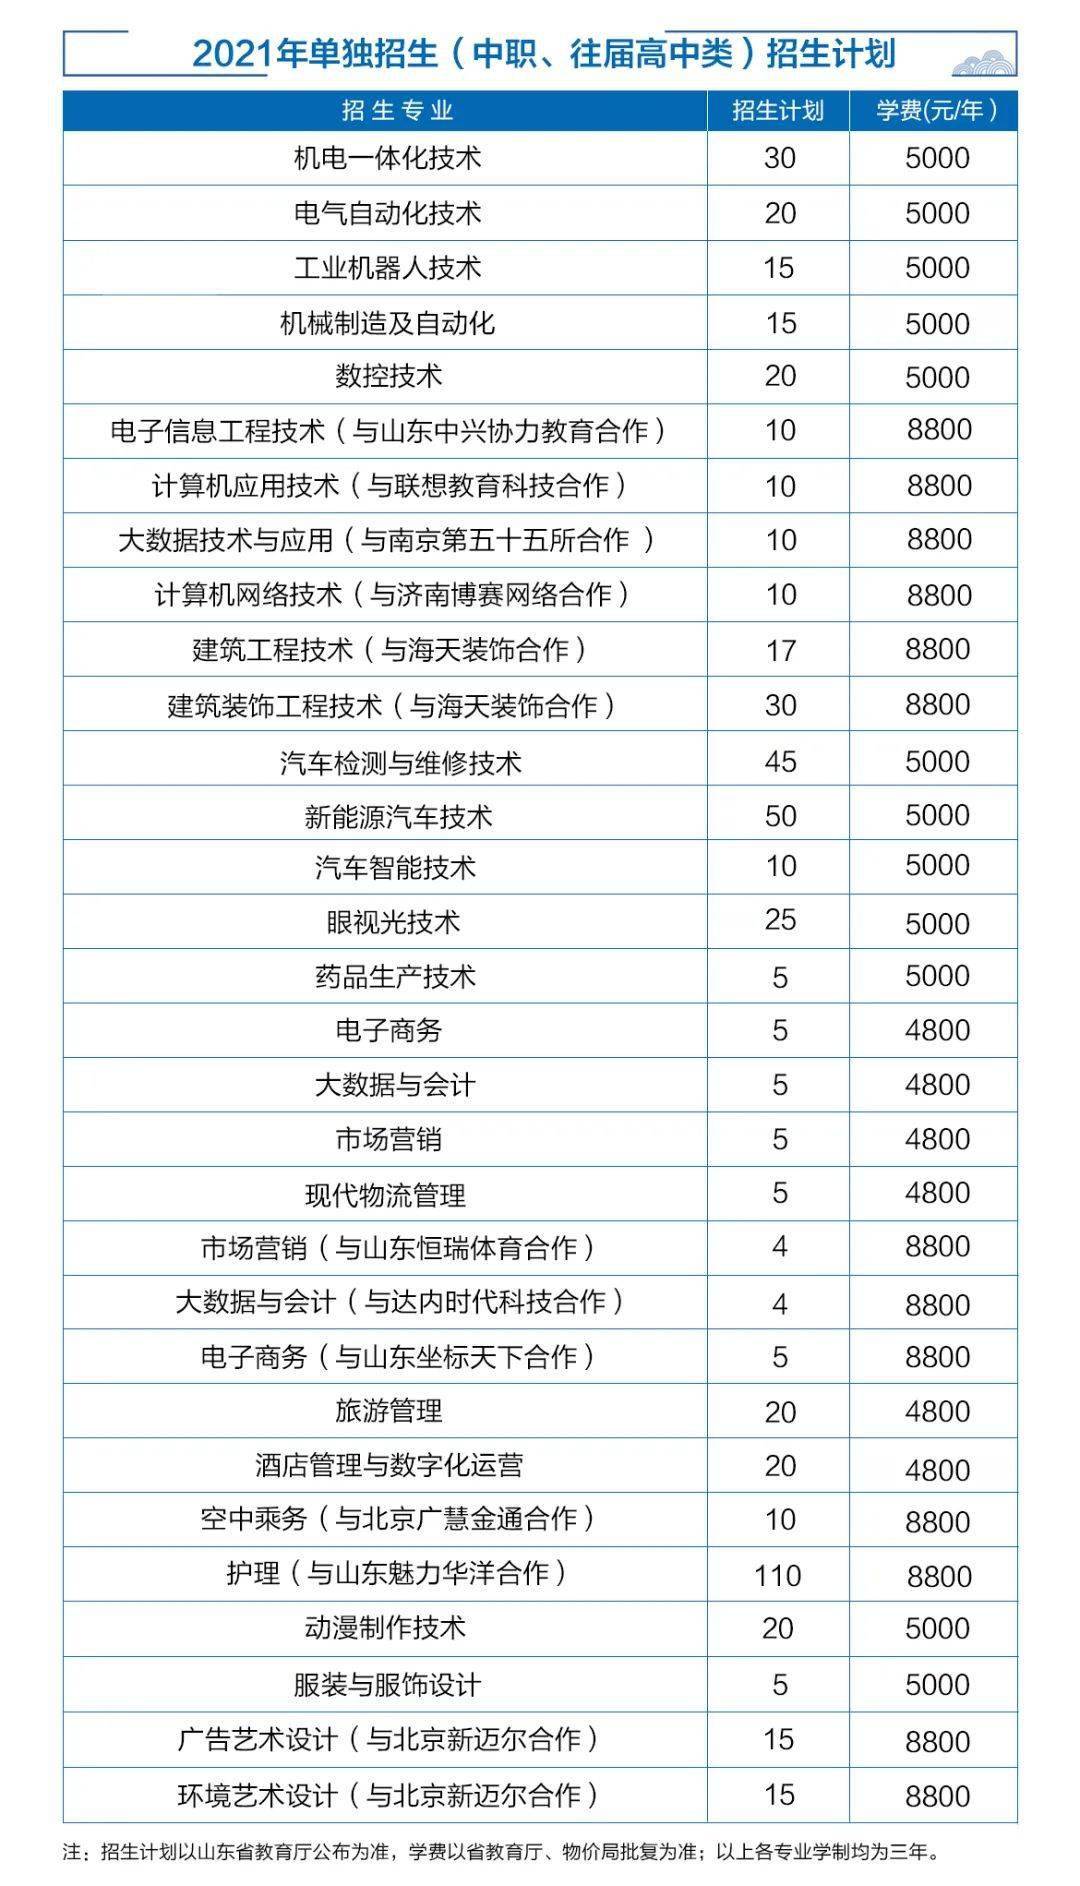 招生3550人济宁职业技术学院2021单招综招详情来了